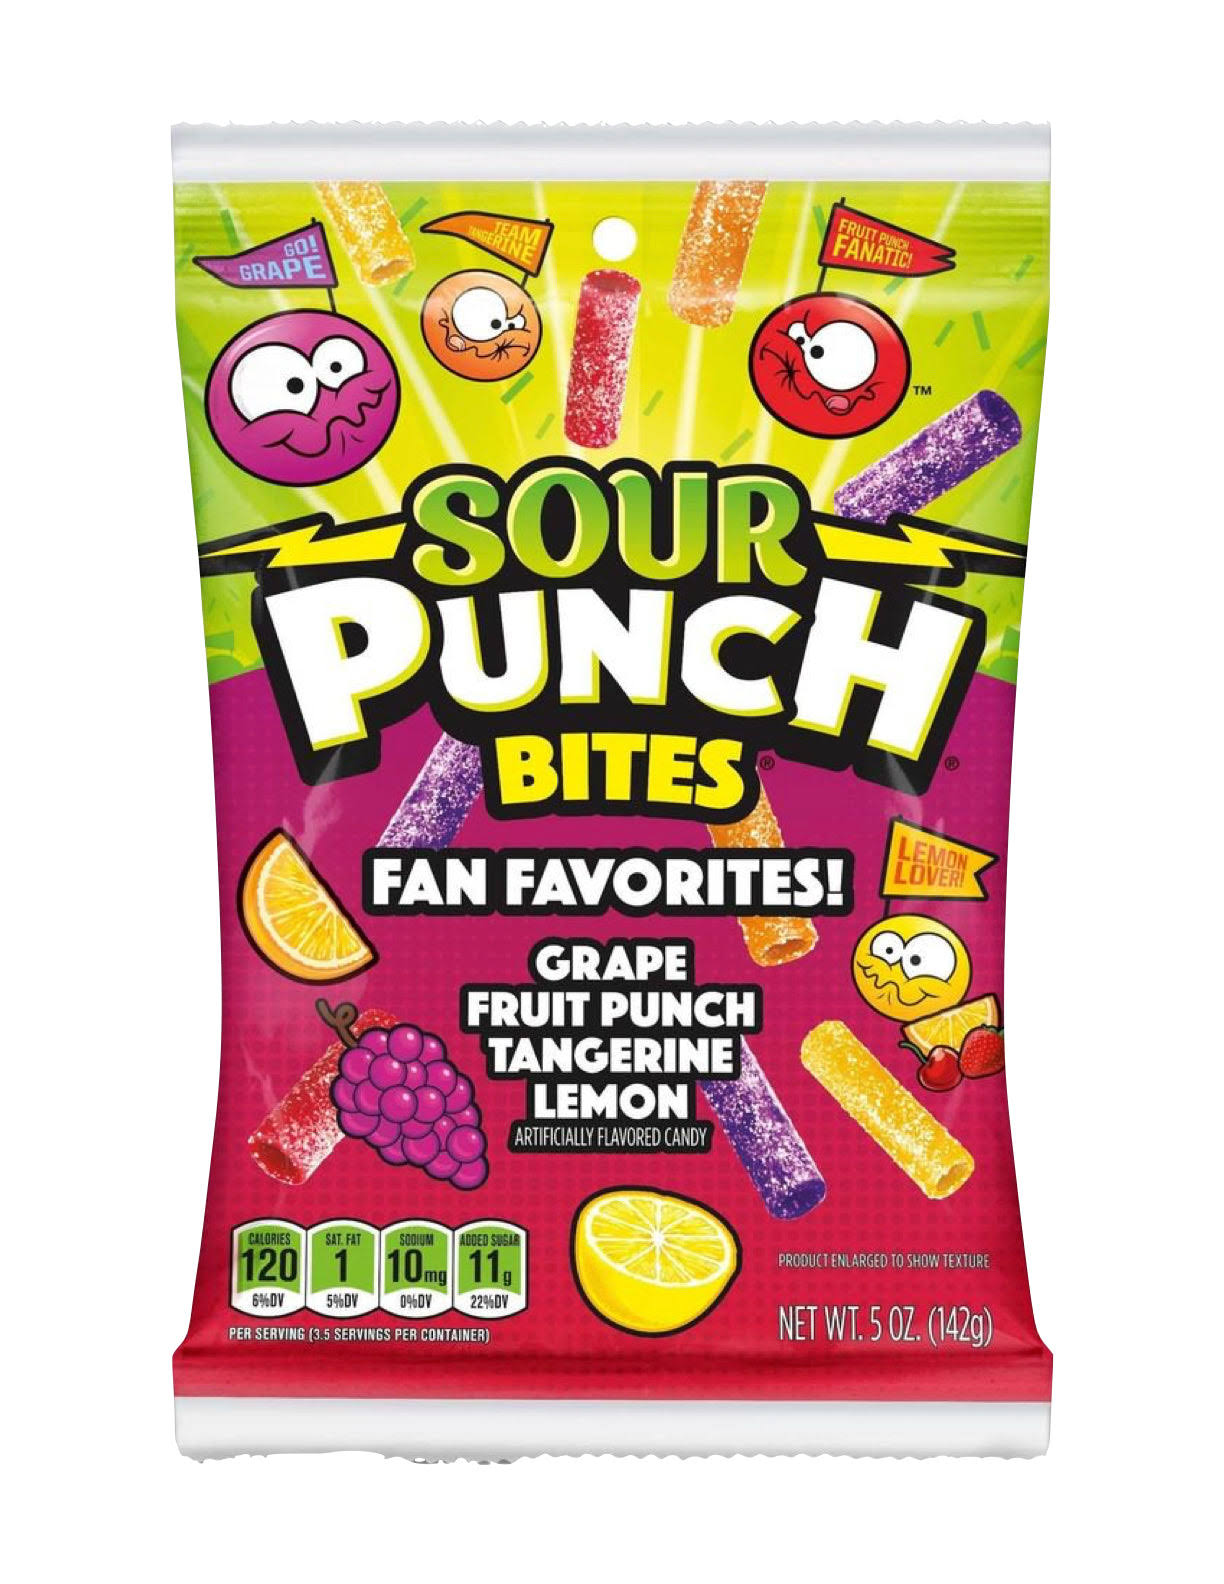 Sour punch Bites -Fan Favorites